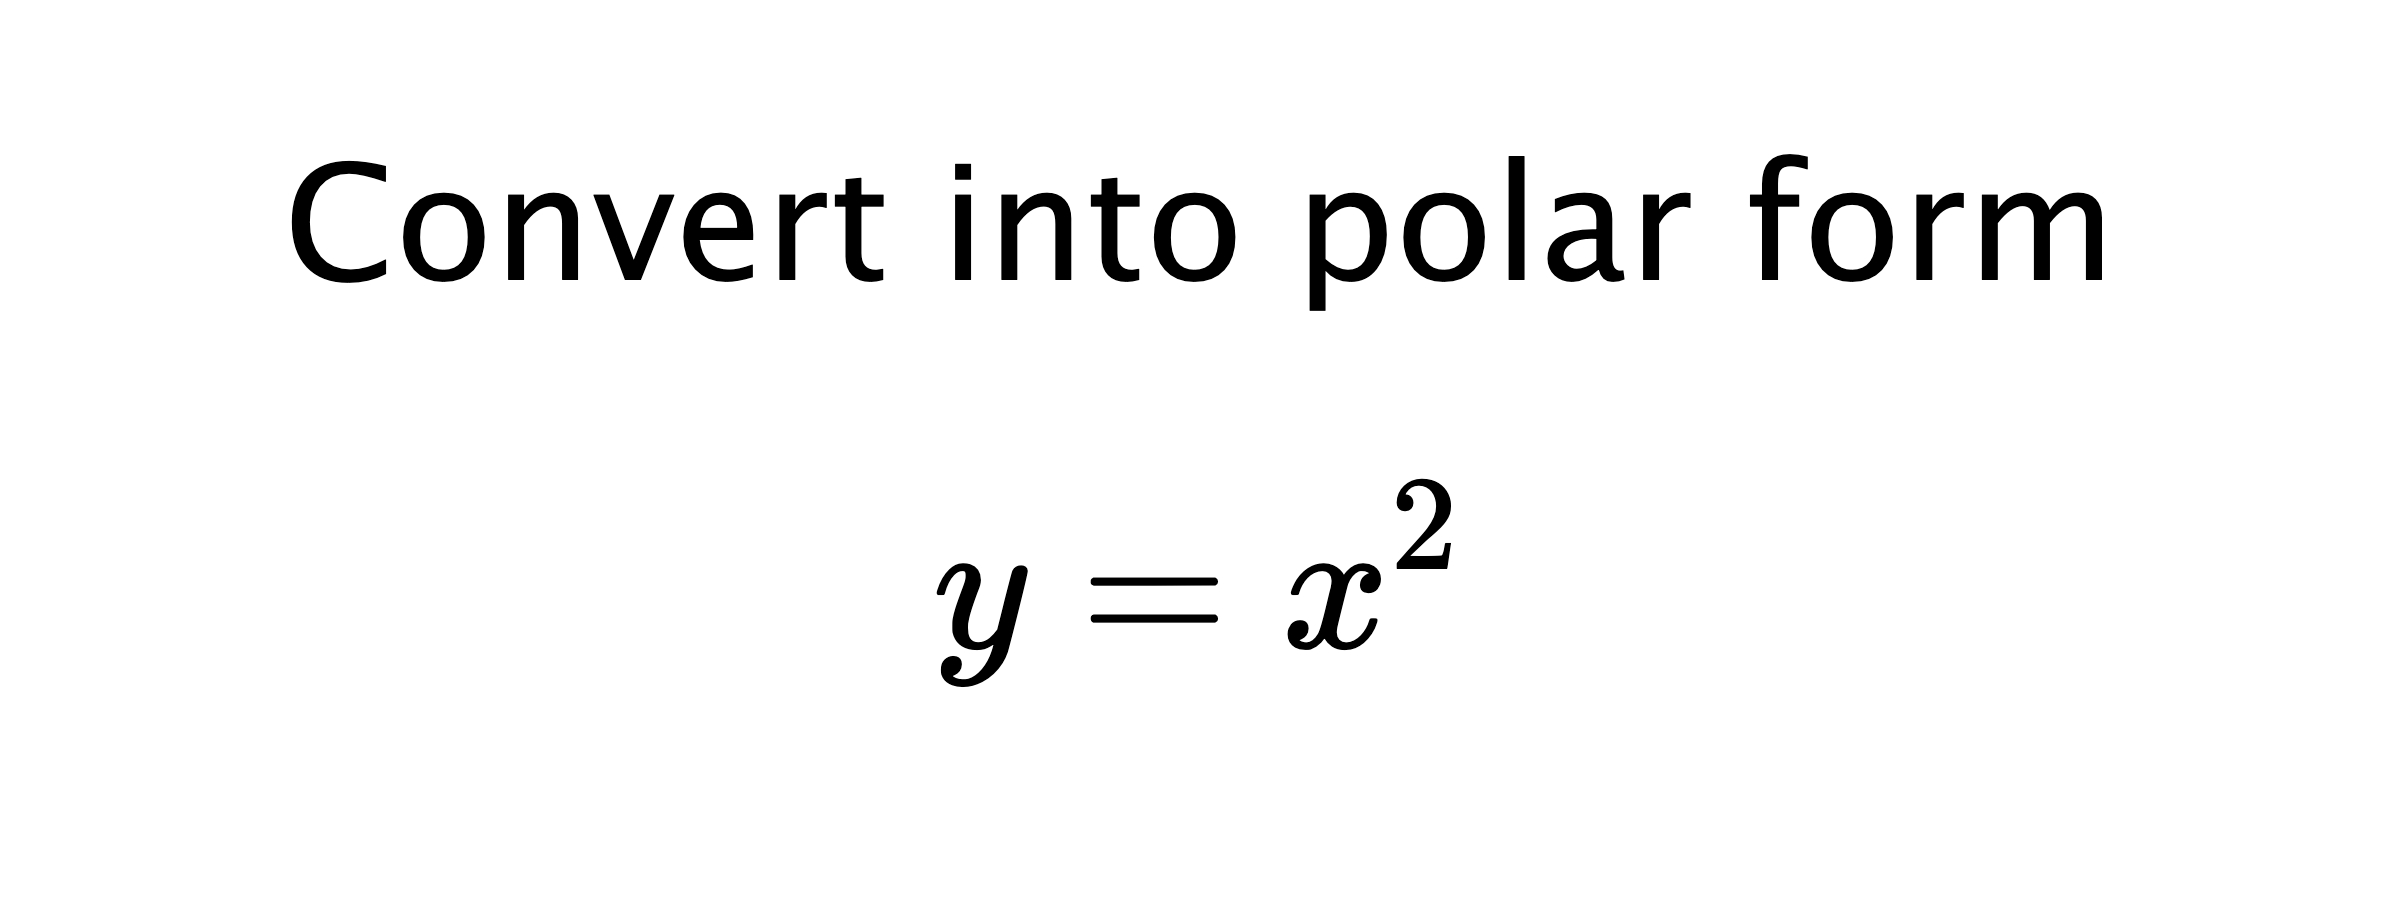  Convert into polar form $$ y=x^{2} $$